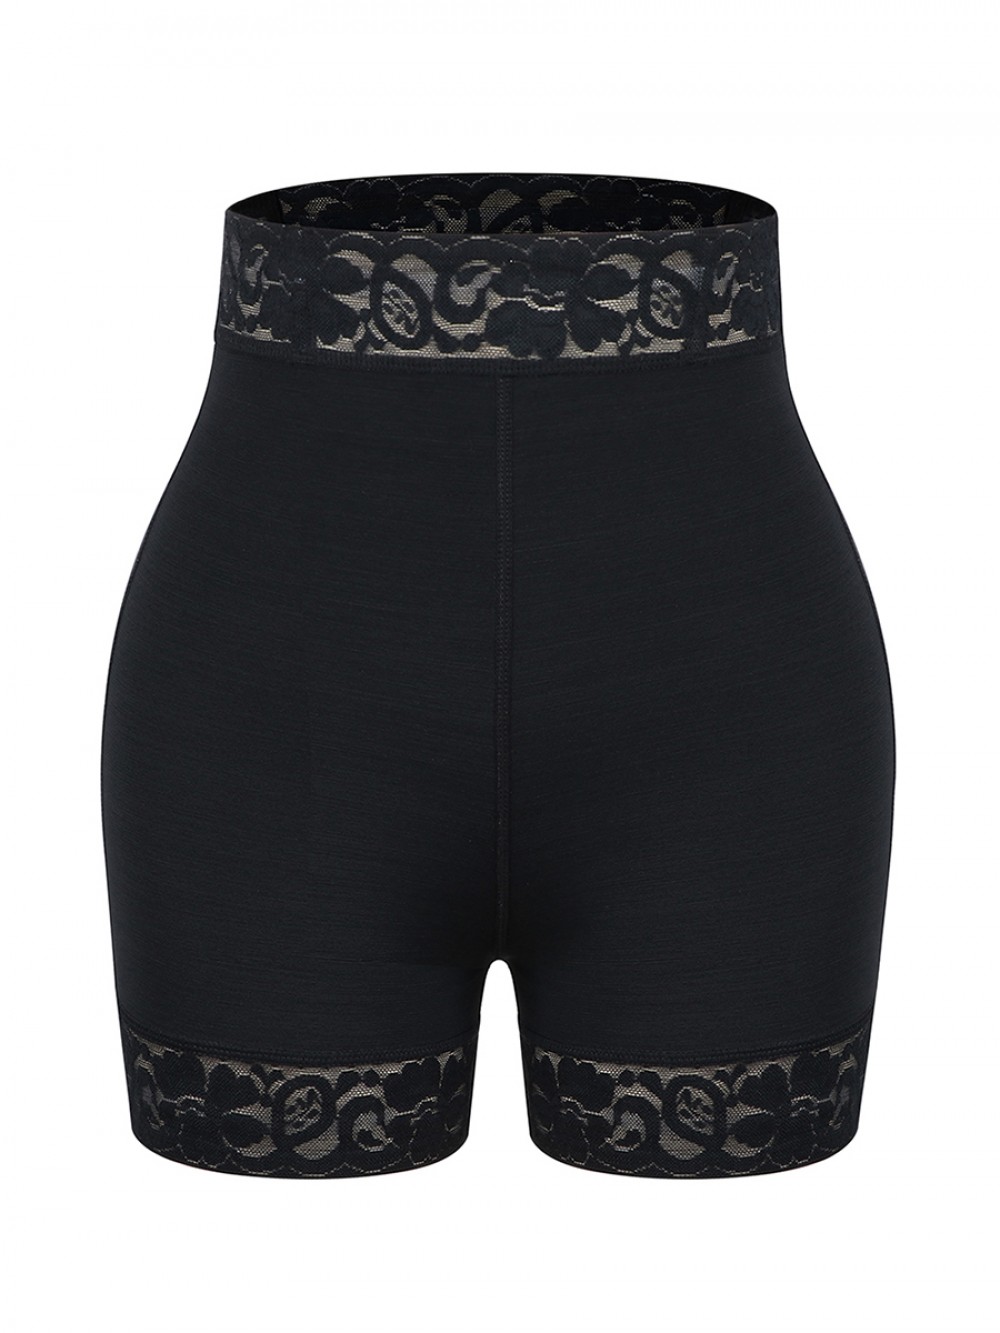 Black High Waist Lace Butt Enhancer Panty Firm Control